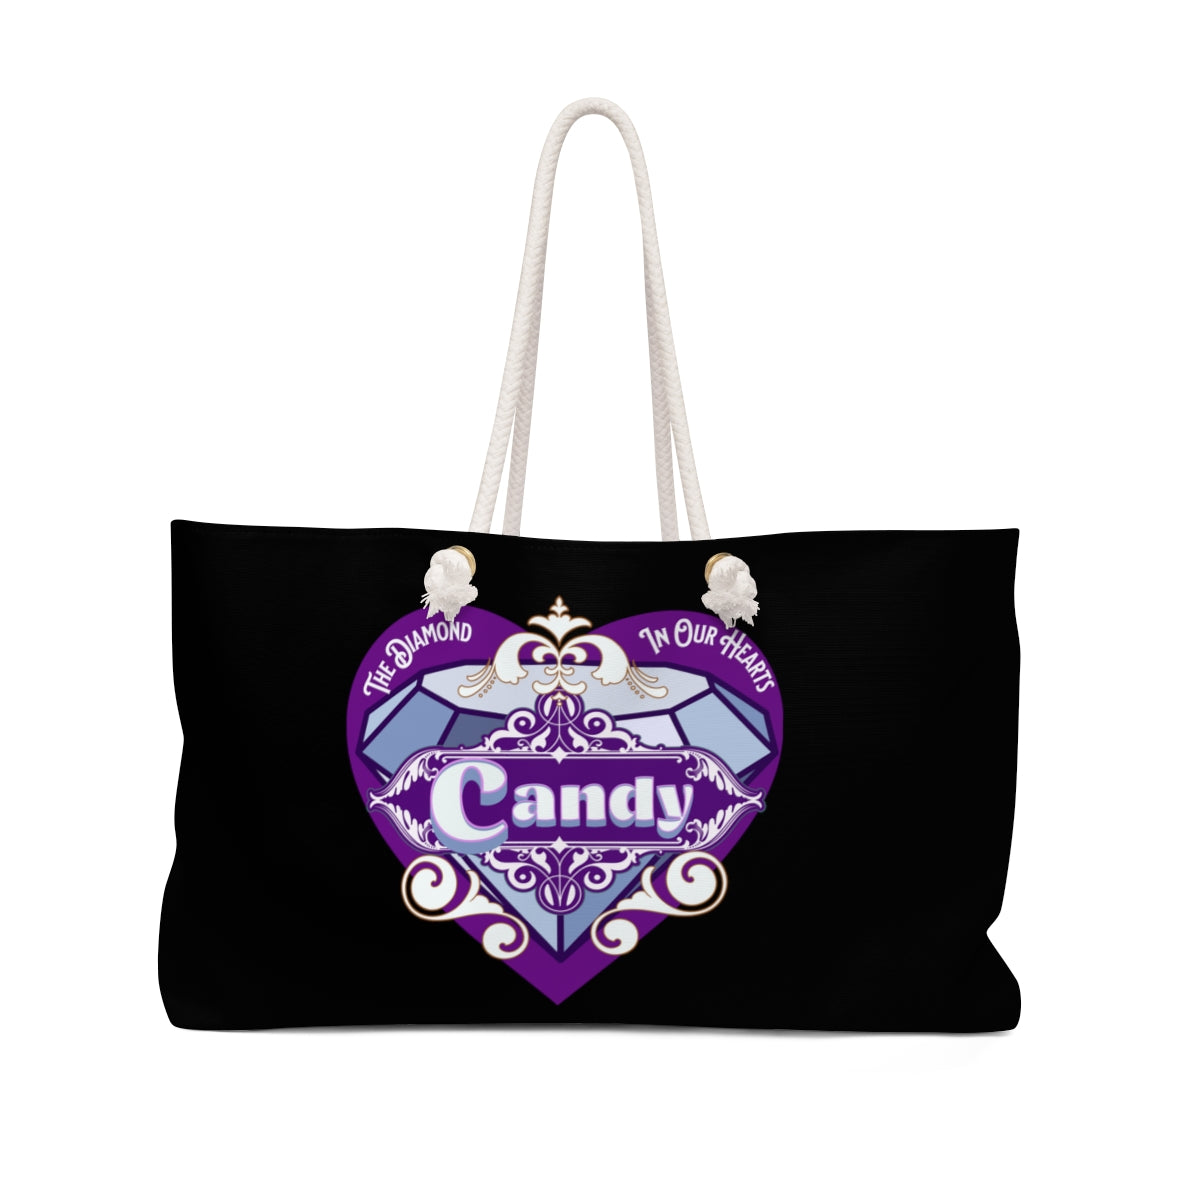 Candy's Weekender Bag